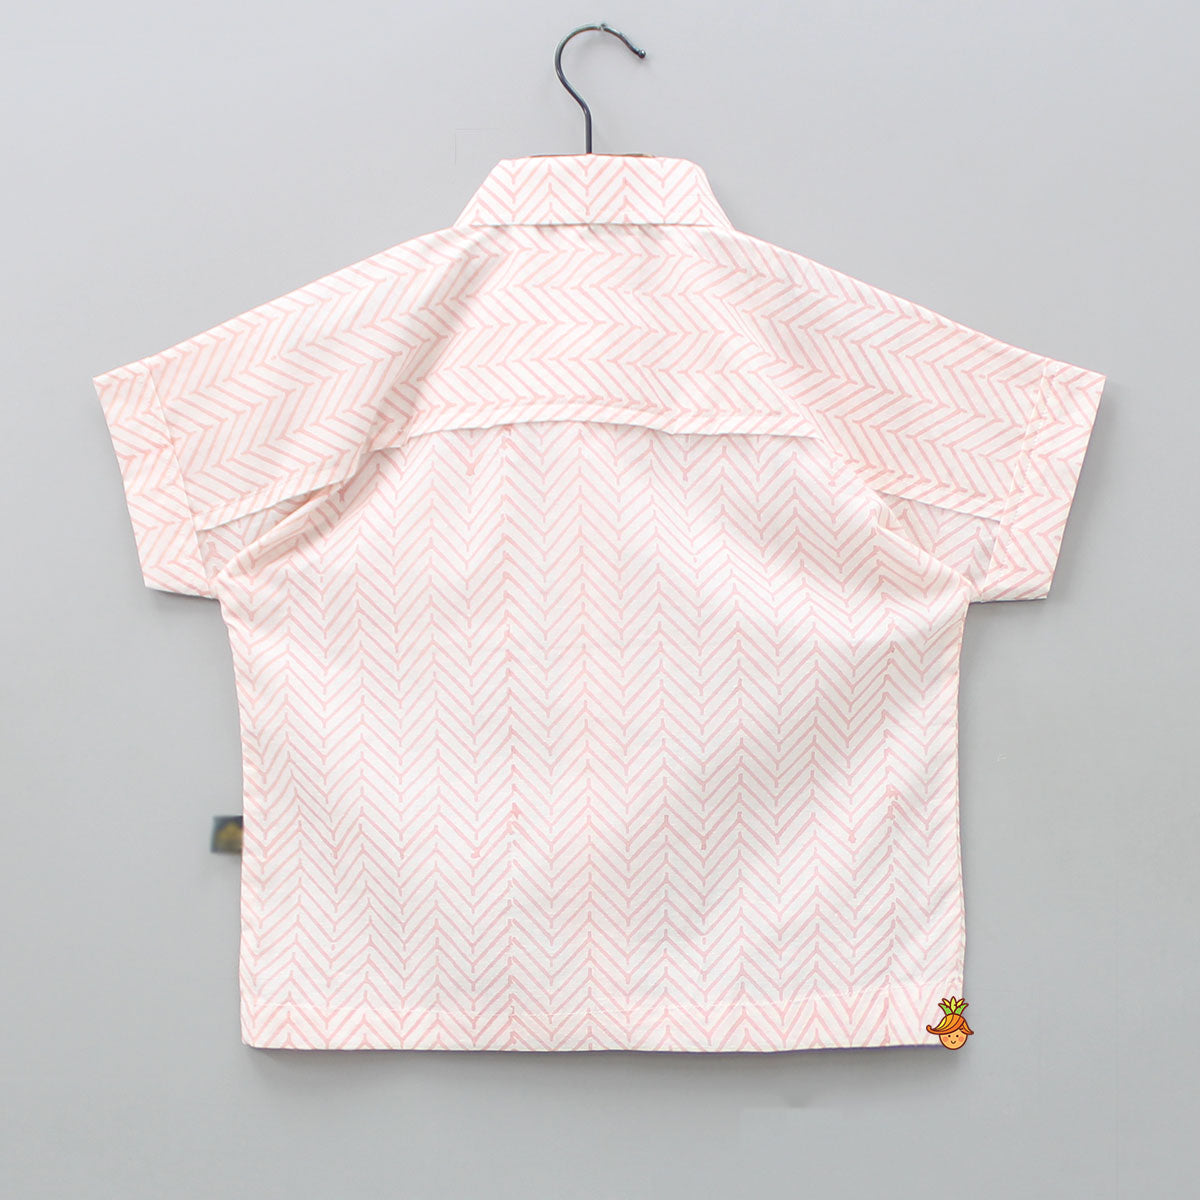 Chevron Printed Peach Shirt